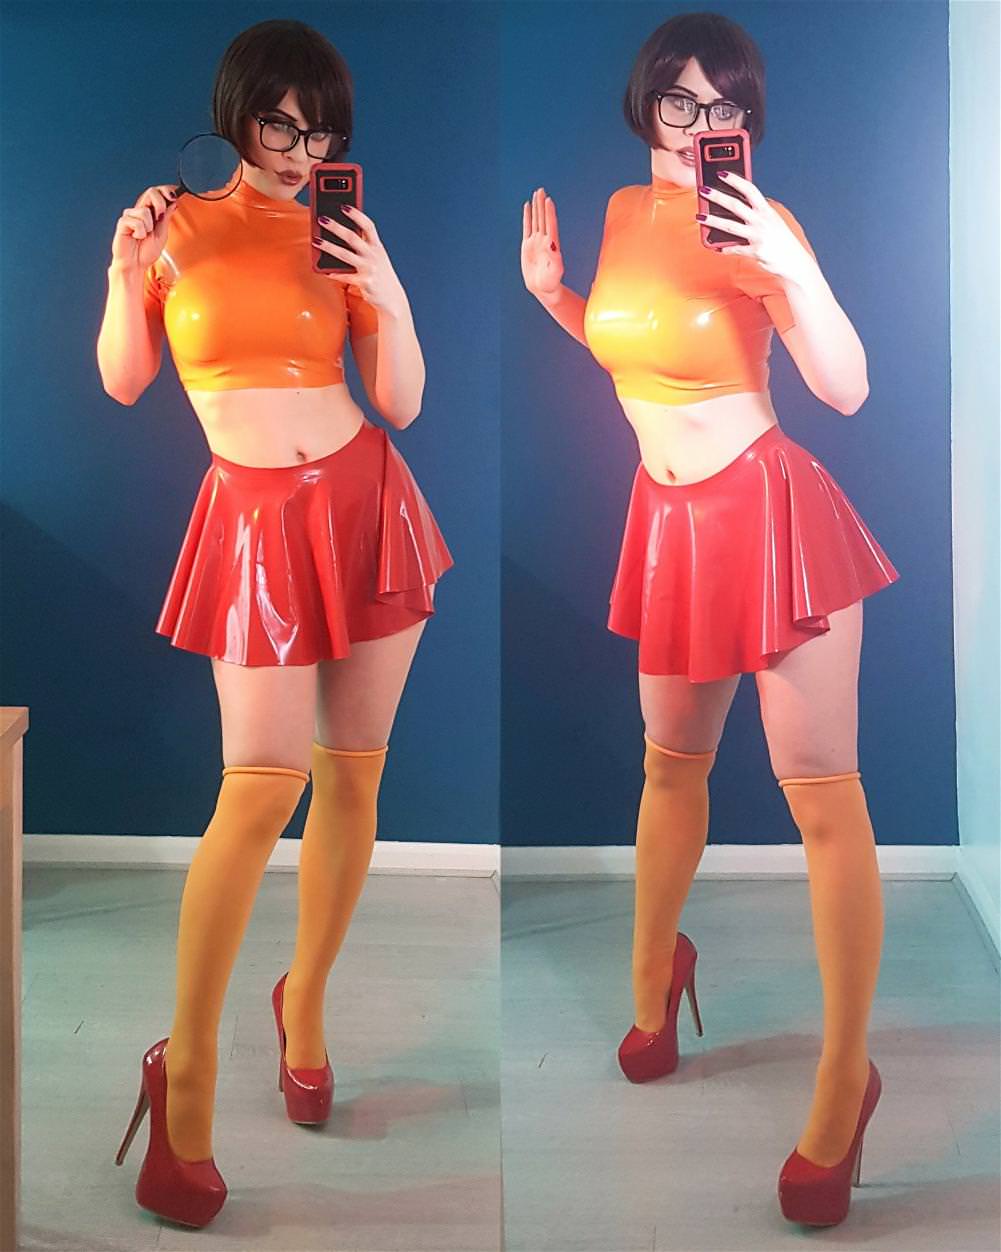 Jinkies Velma.